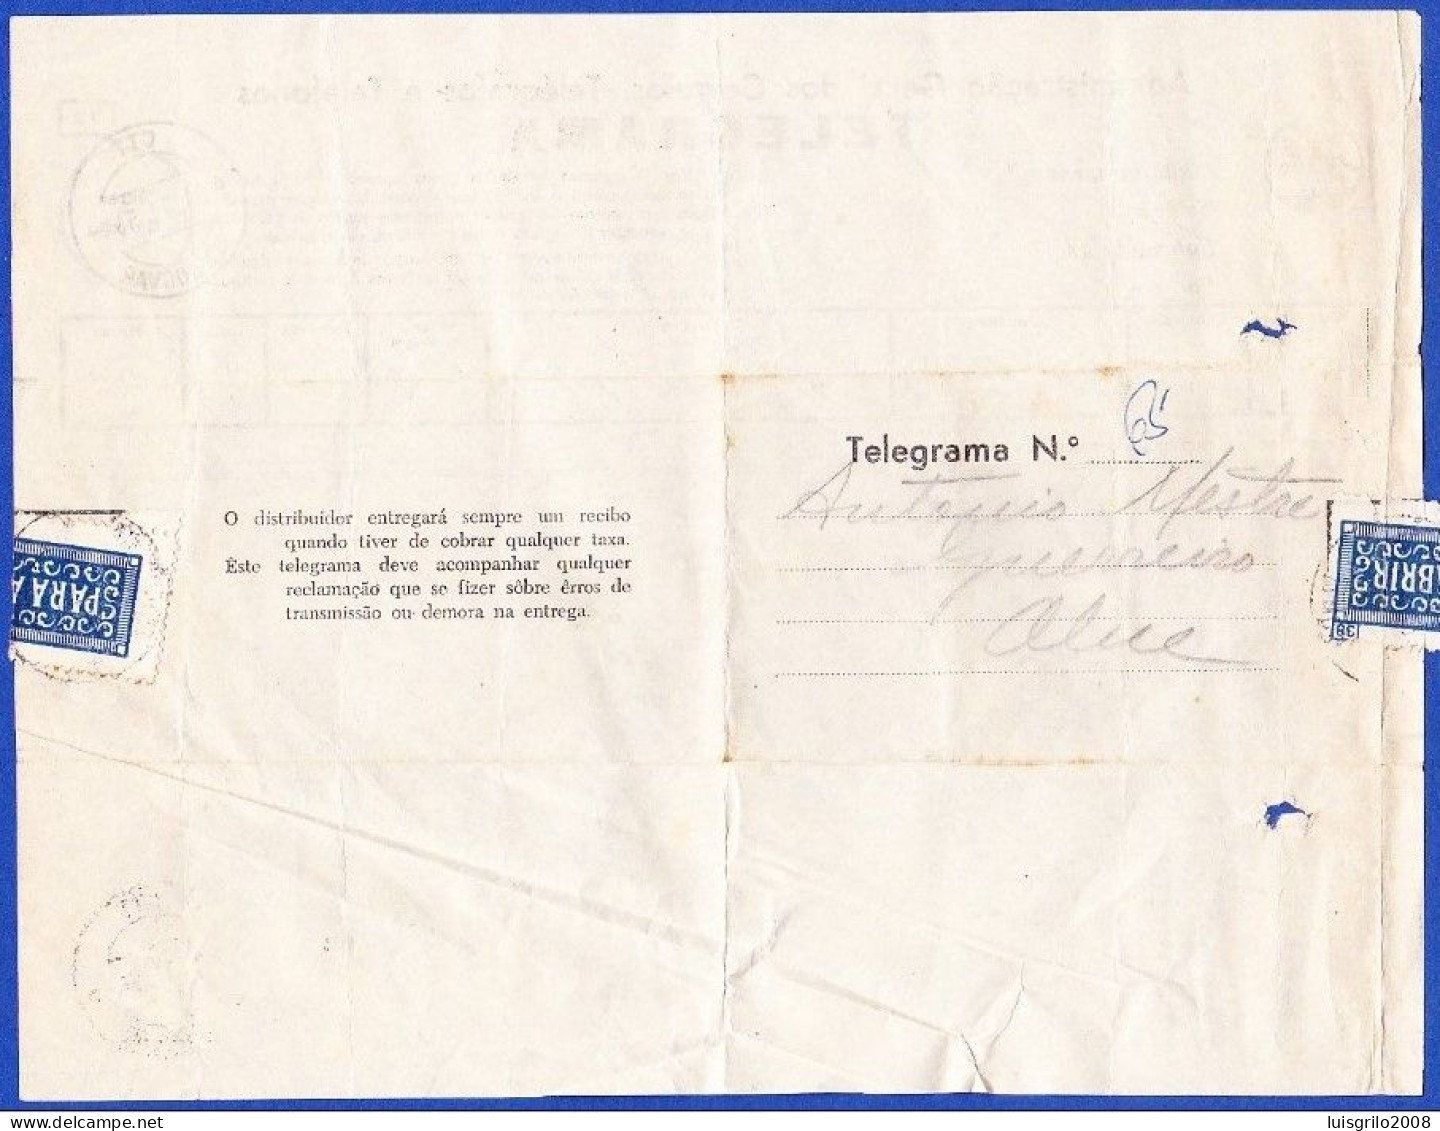 Telegram/ Telegrama - Terreiro Do Paço, Lisboa > Almodovar -|- Postmark - Almodovar. 1958 - Briefe U. Dokumente